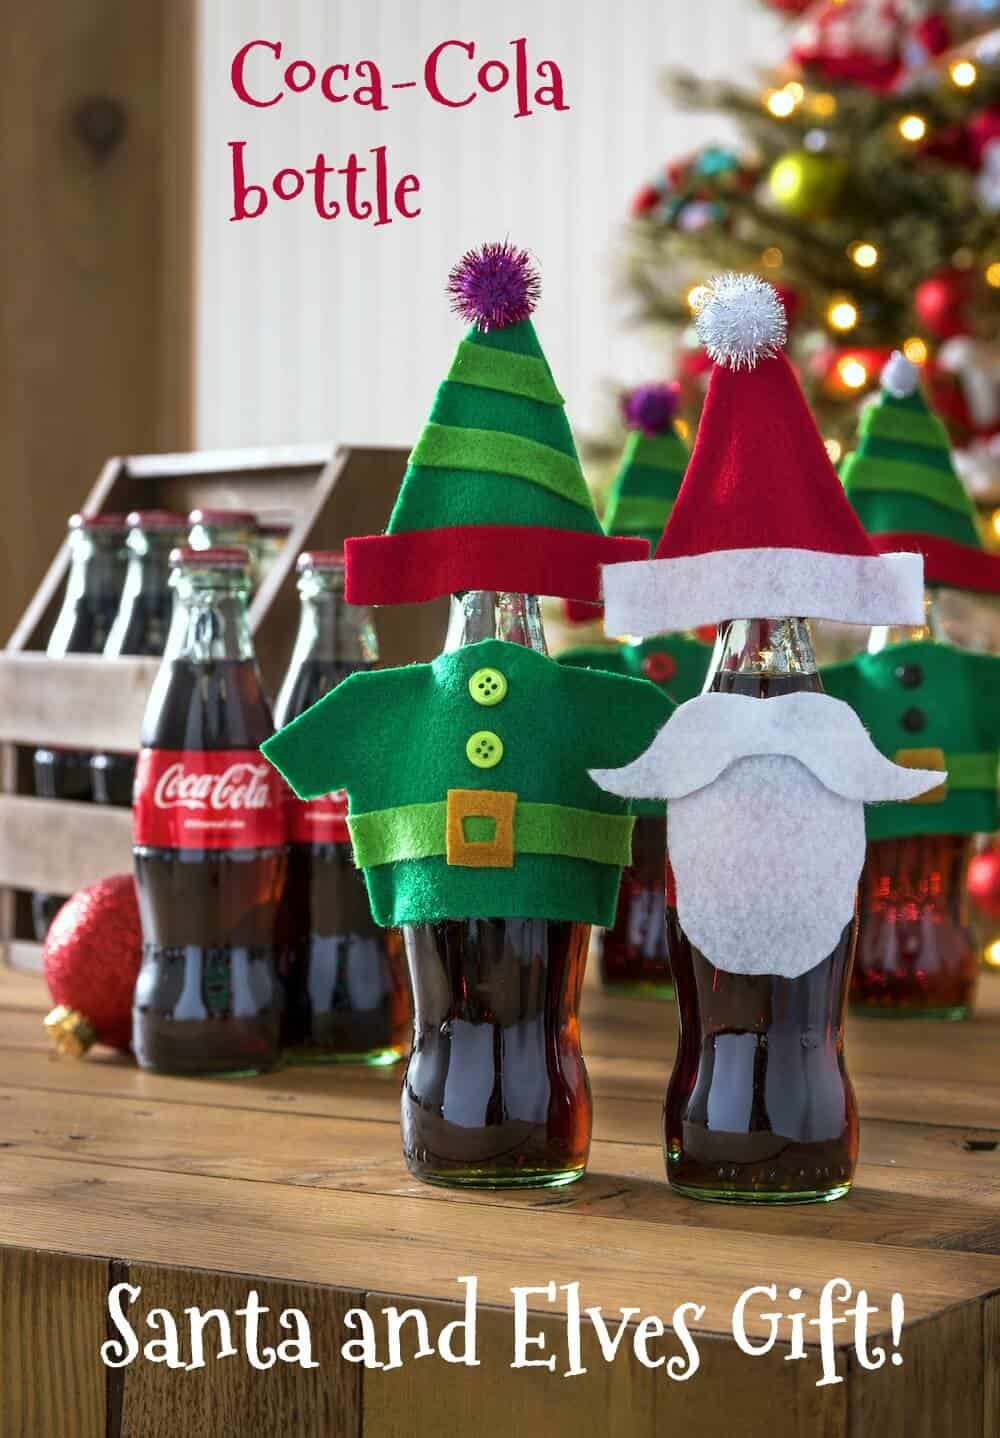 Coca-Cola Bottle Santa and Elves Gift!